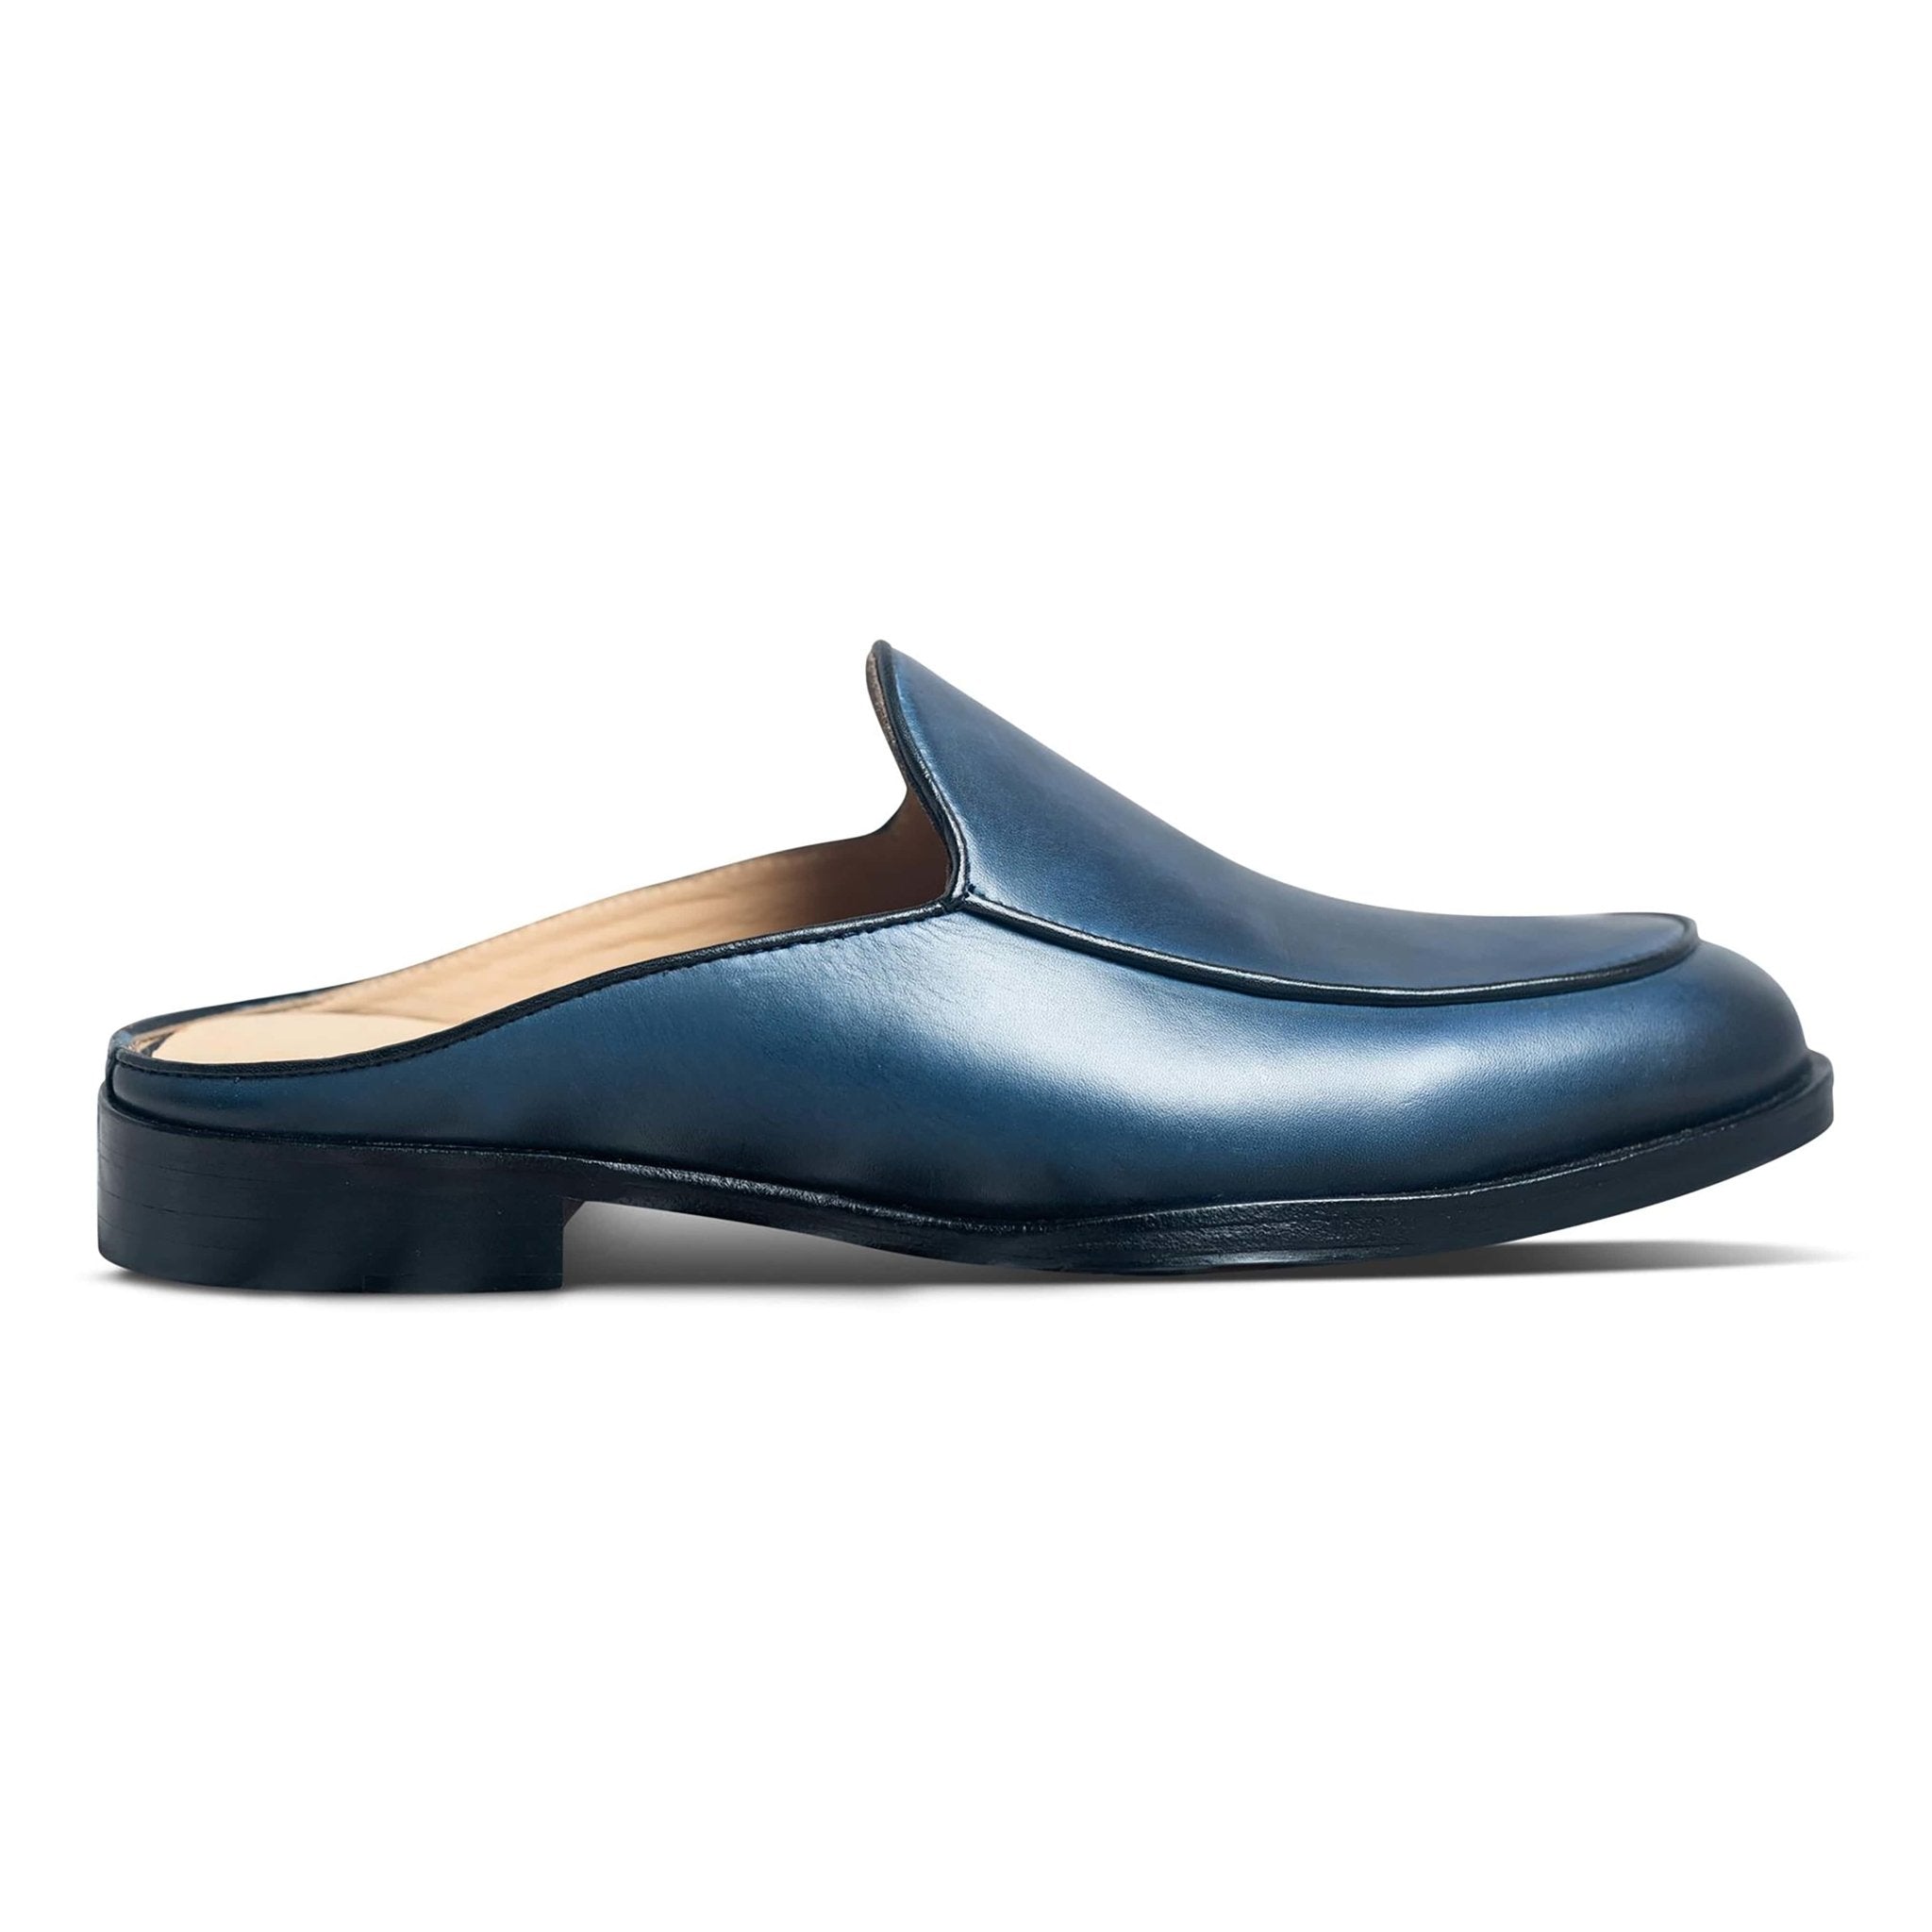 Hoffler Cobalto - dmodot Shoes